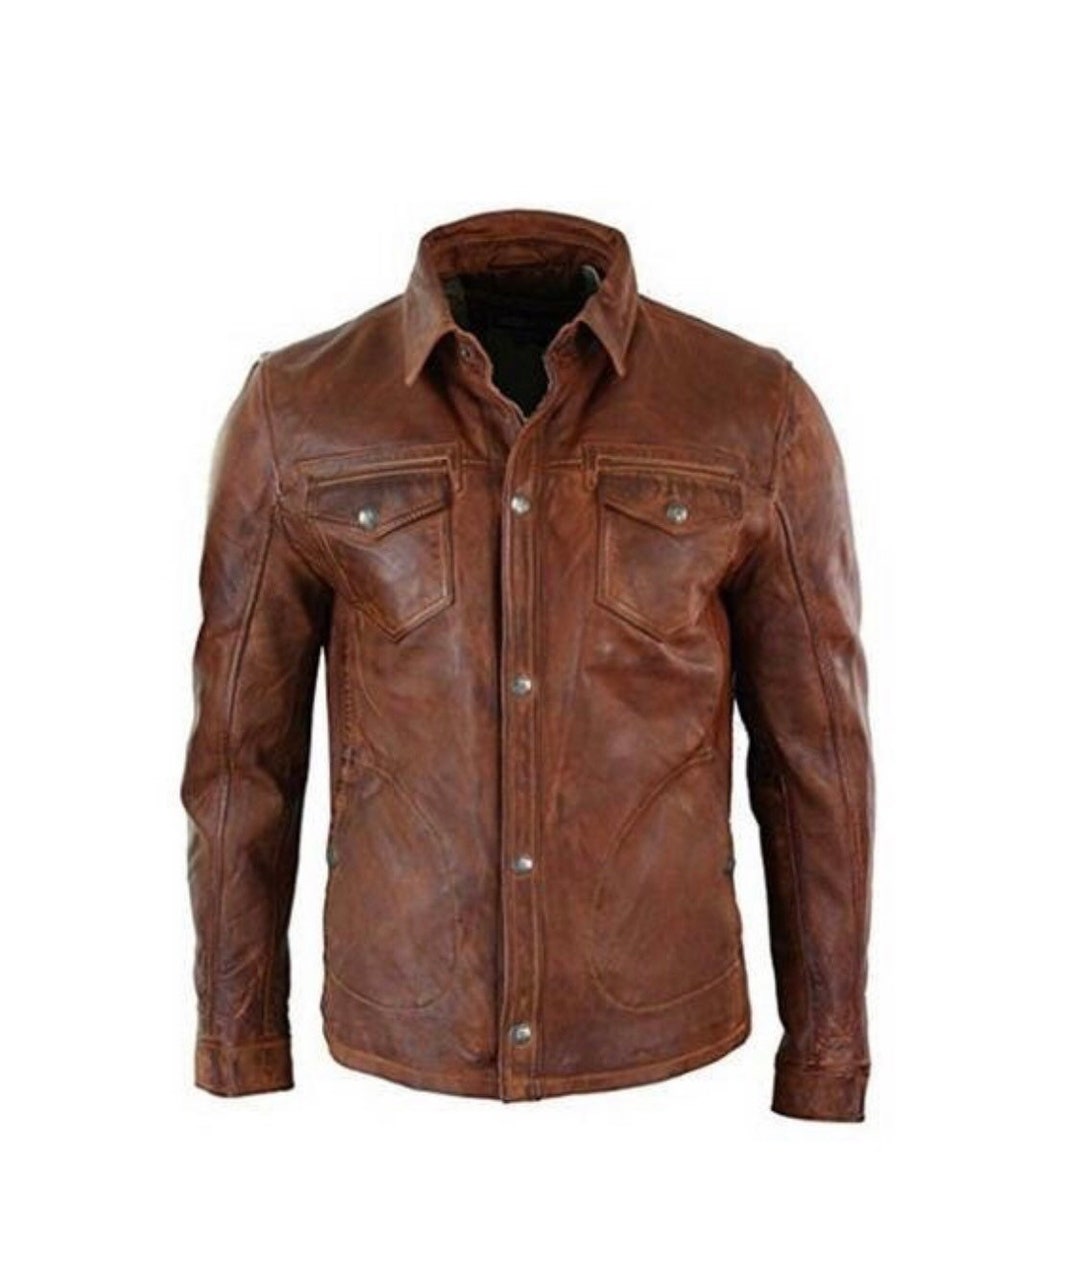 Real Leather Jacket Men Brown Cuir Lederhemd Leder Schwarz Shirt Botton ...